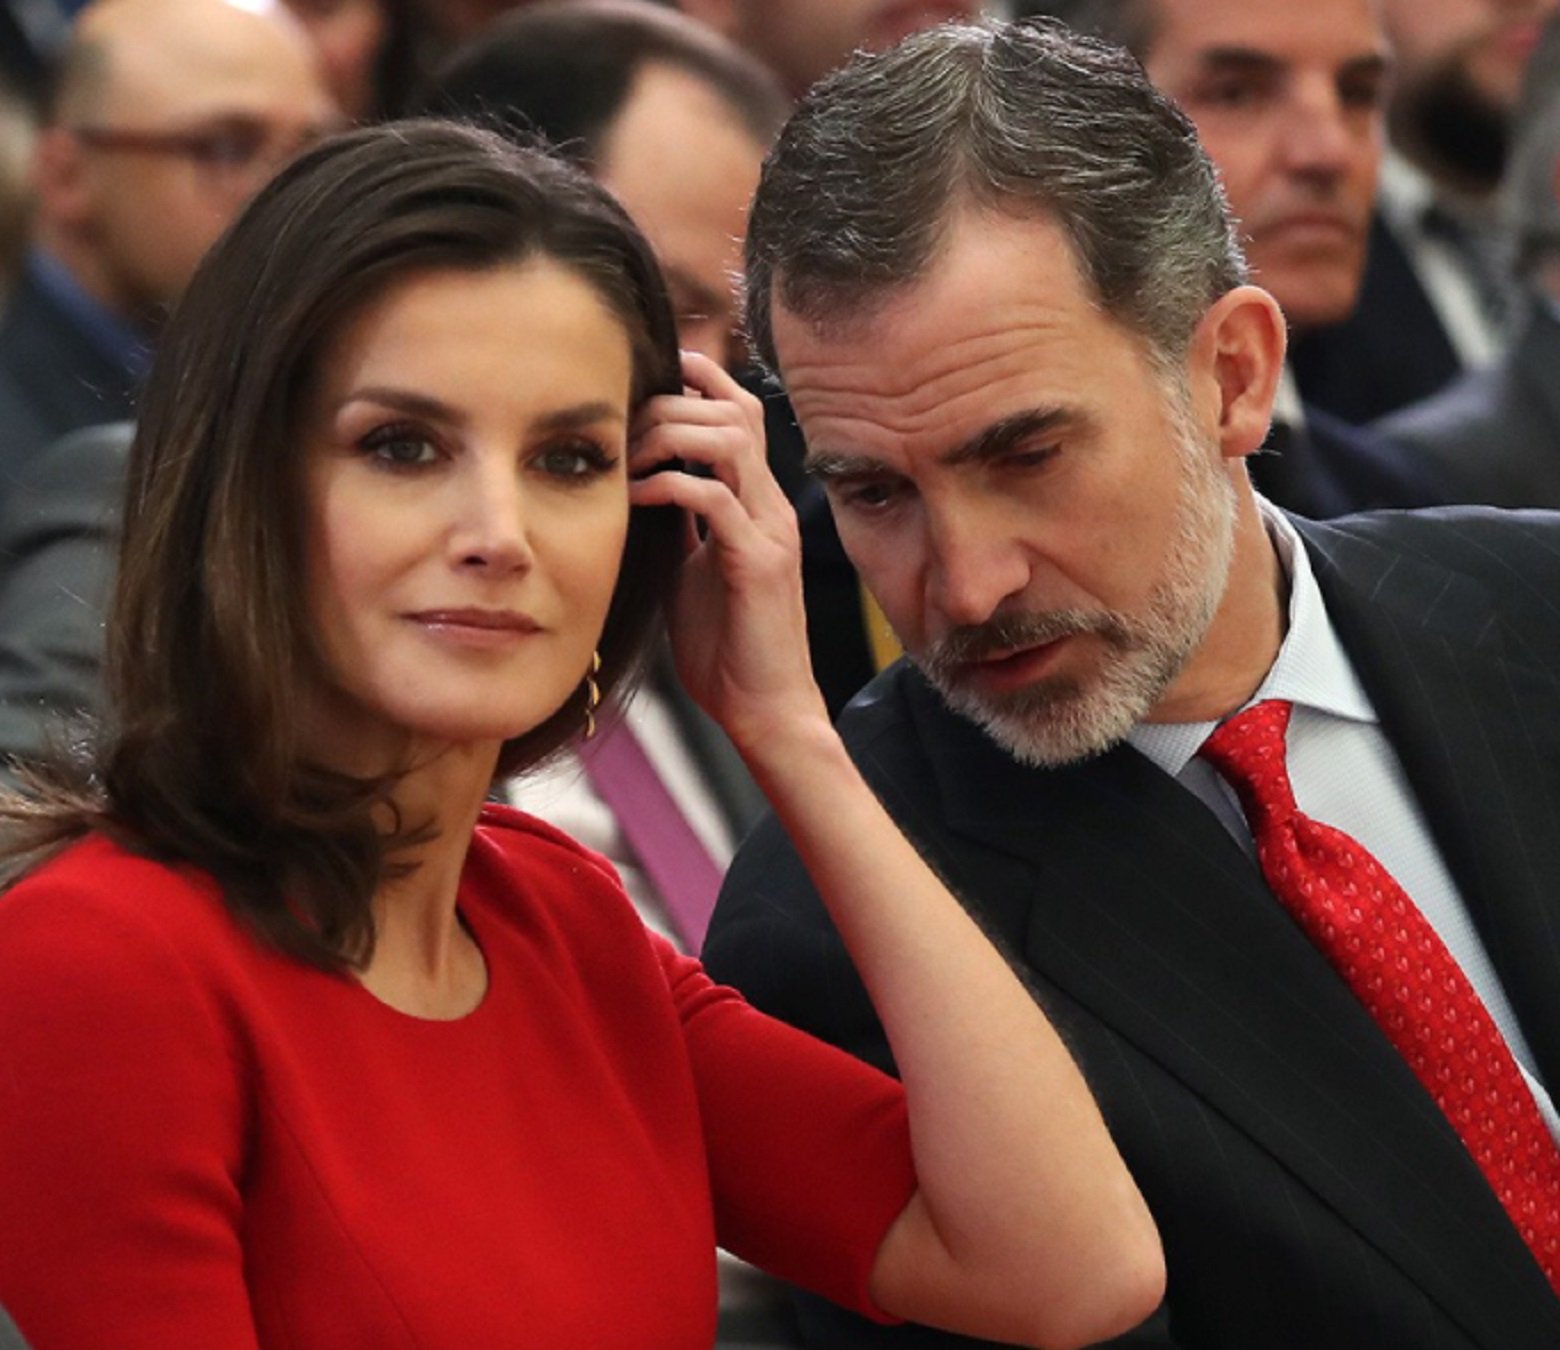 El Jueves destroza Zarzuela: Letizia y Felipe hablando de "f*llar entre primos"